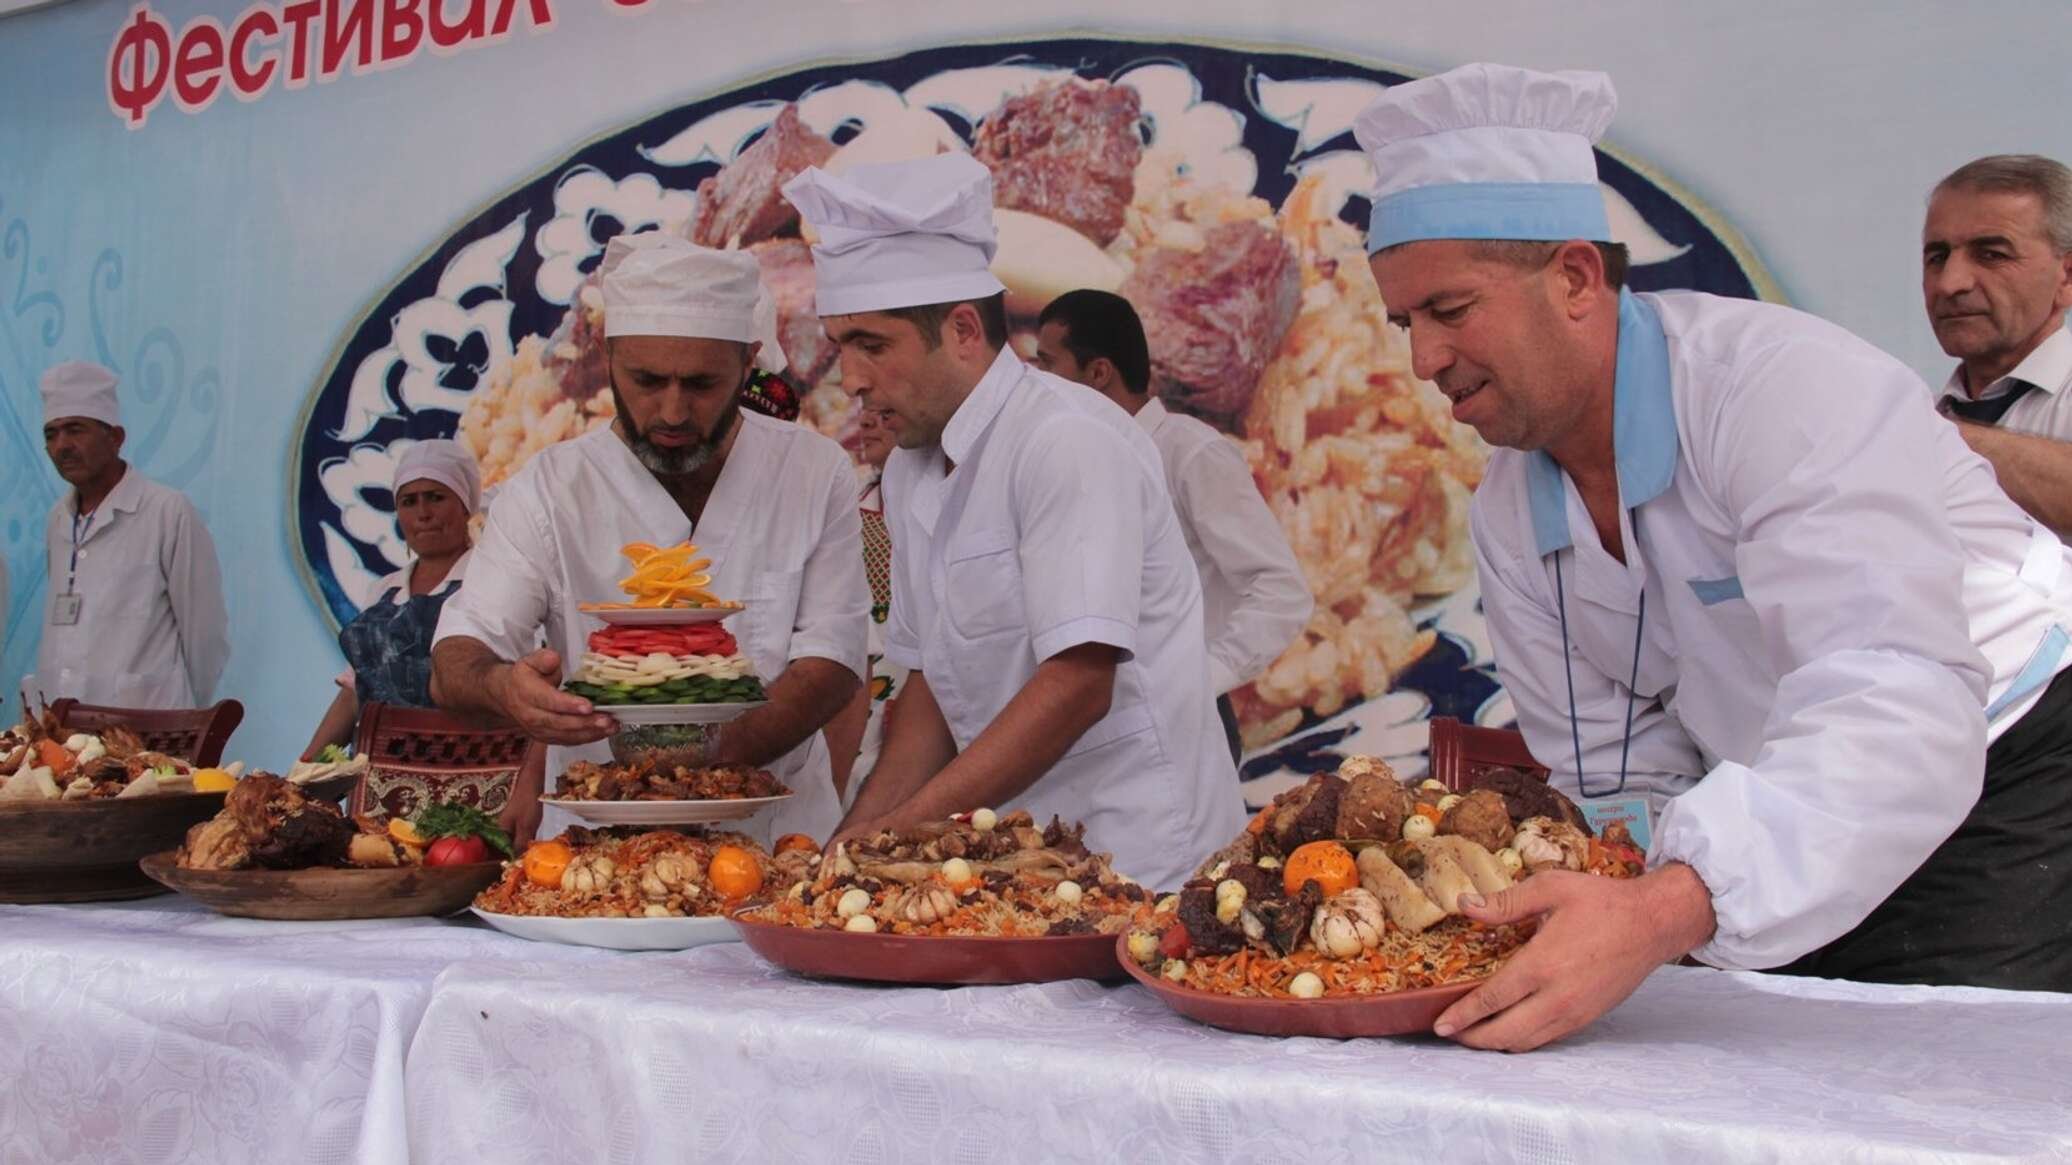 Оши душанбе. Оши Палава. Плов Самаркандский дастархан. Восточная кухня плов в Таджикистане. Оши палав фестиваль.